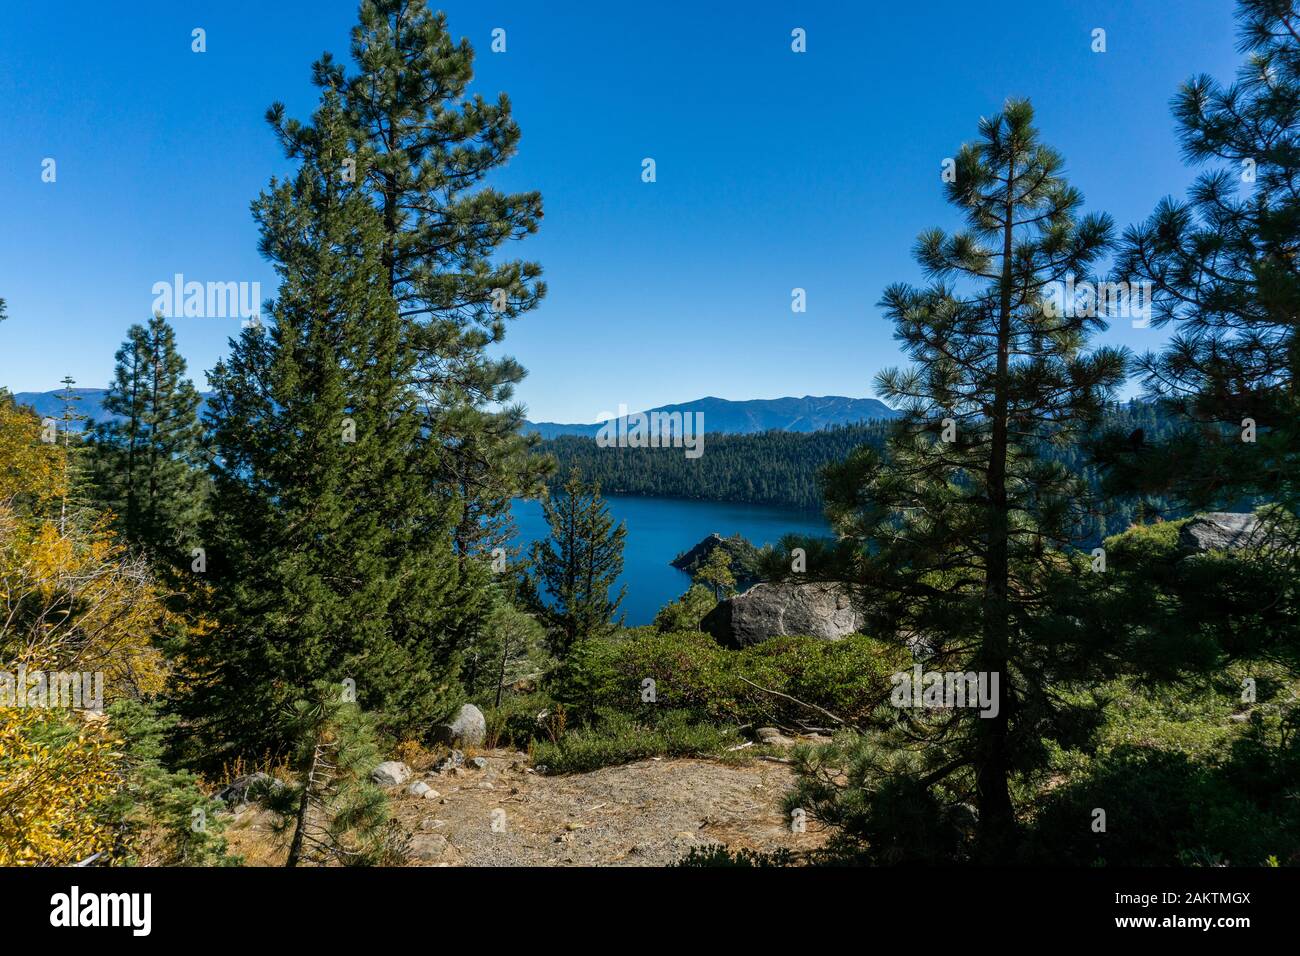 Besucher des Emerald Bay State Park, Lake tahoe genießen Wanderungen in die Berge, Schwimmen in den Seen, Kajakfahren, Sporttauchen, Bootstouren und Sehenswürdigkeiten. Stockfoto